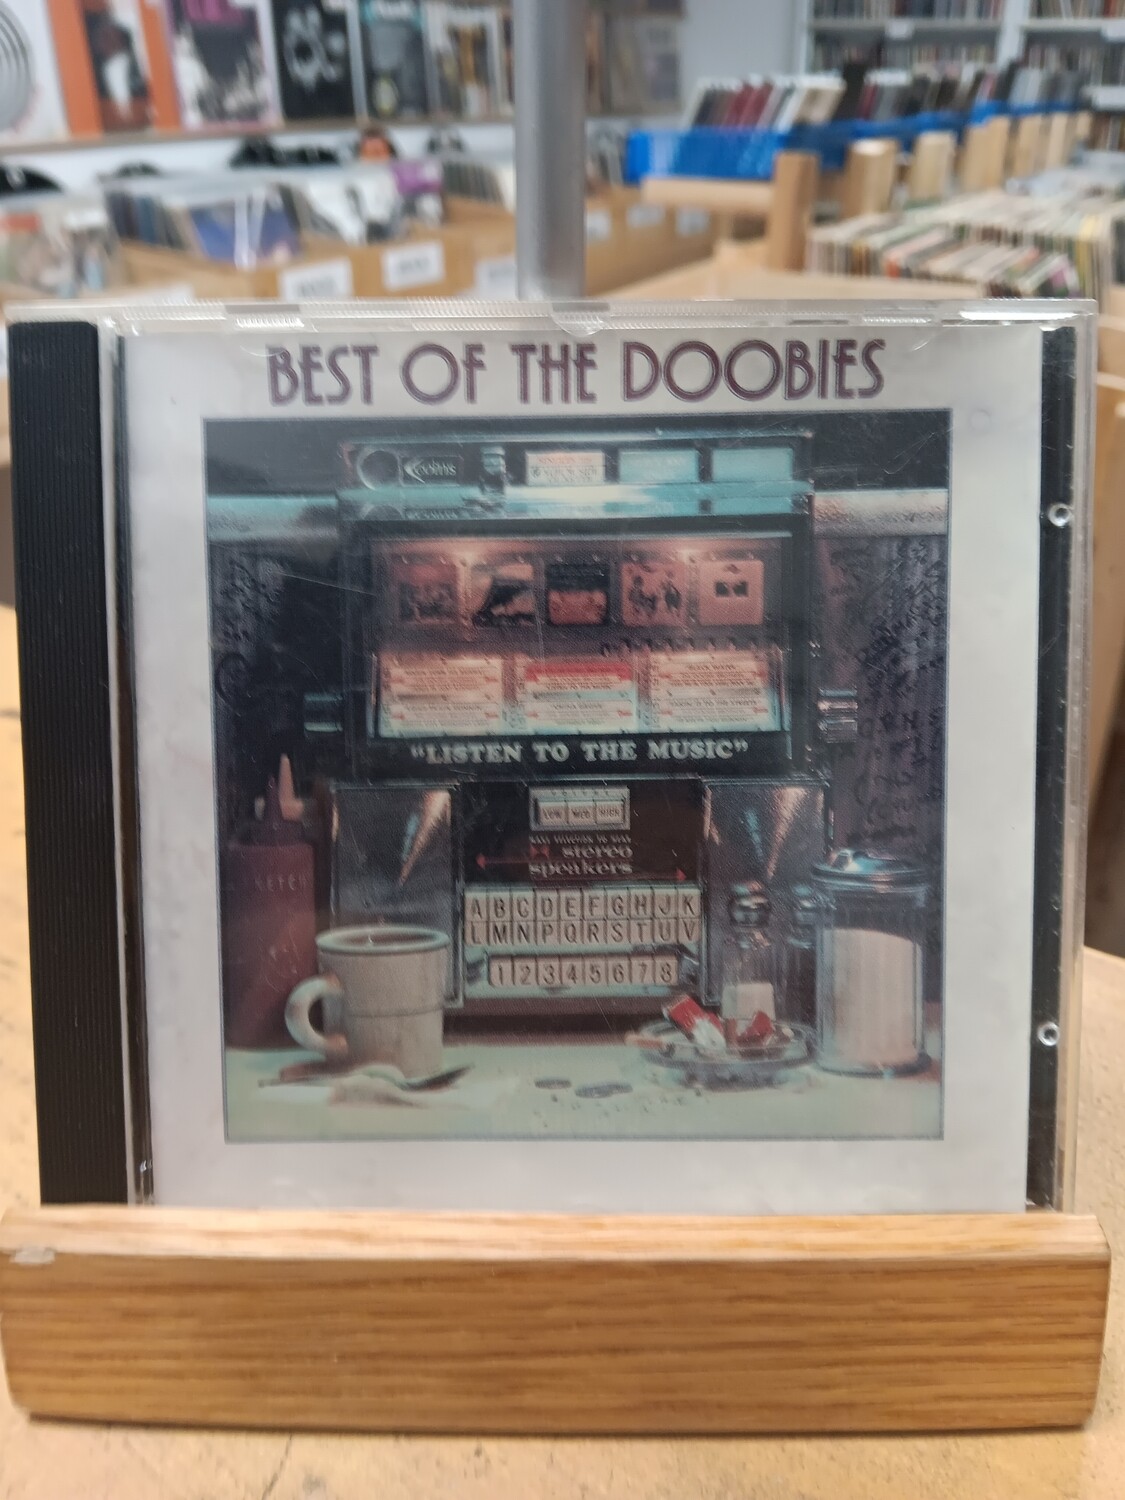 THE DOOBIE BROTHERS - Best of the Doobies (CD)